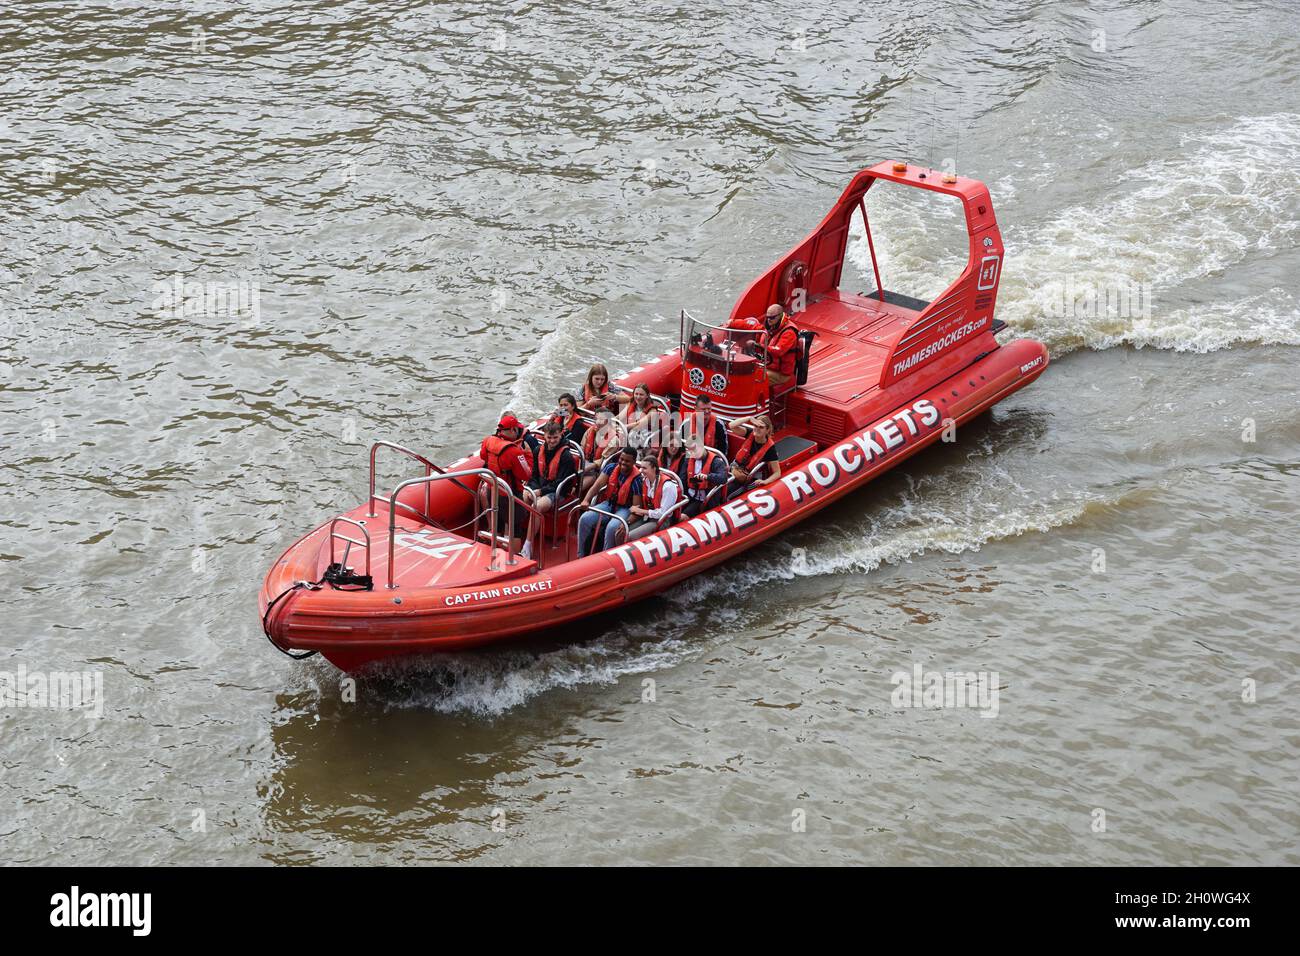 Thames Rockets Hochgeschwindigkeits-Schlauchboot (RIB) mit Touristen auf der Themse, London England Vereinigtes Königreich Großbritannien Stockfoto